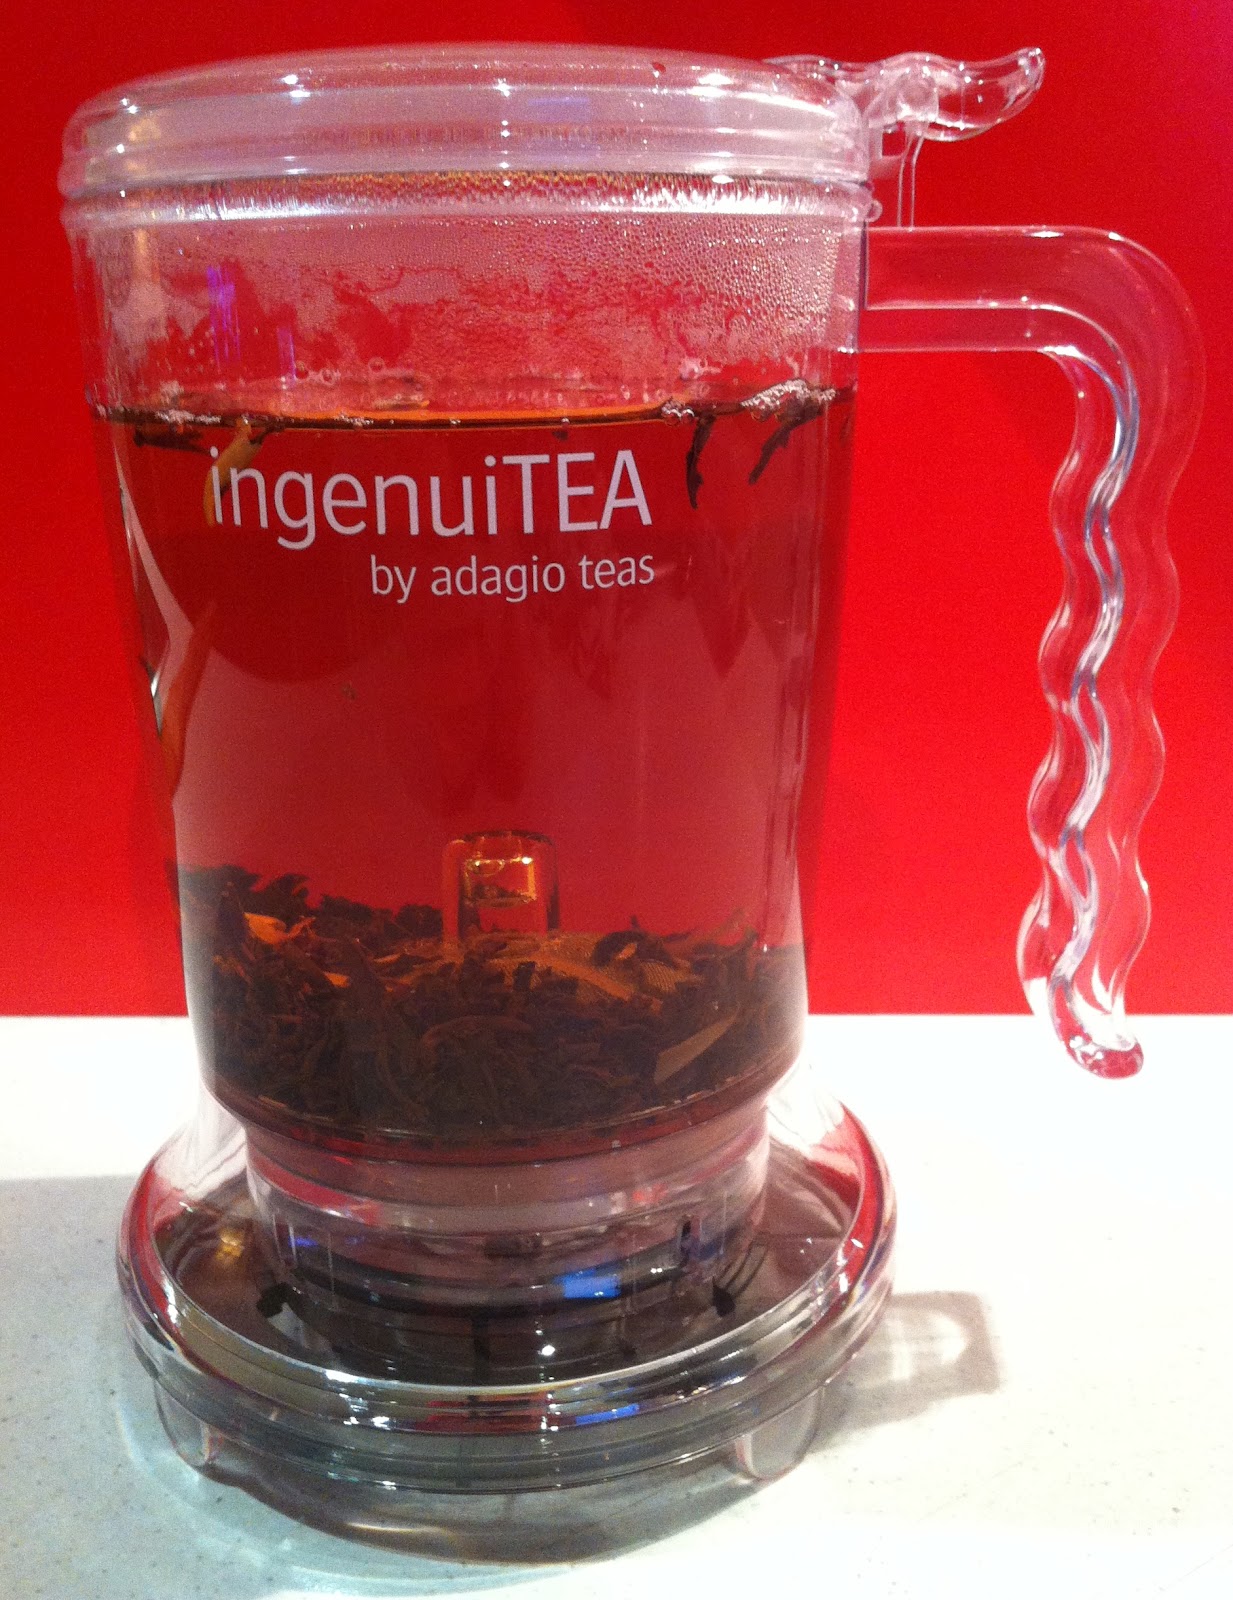 IngenuiTEA 2 Teapot from Adagio Teas